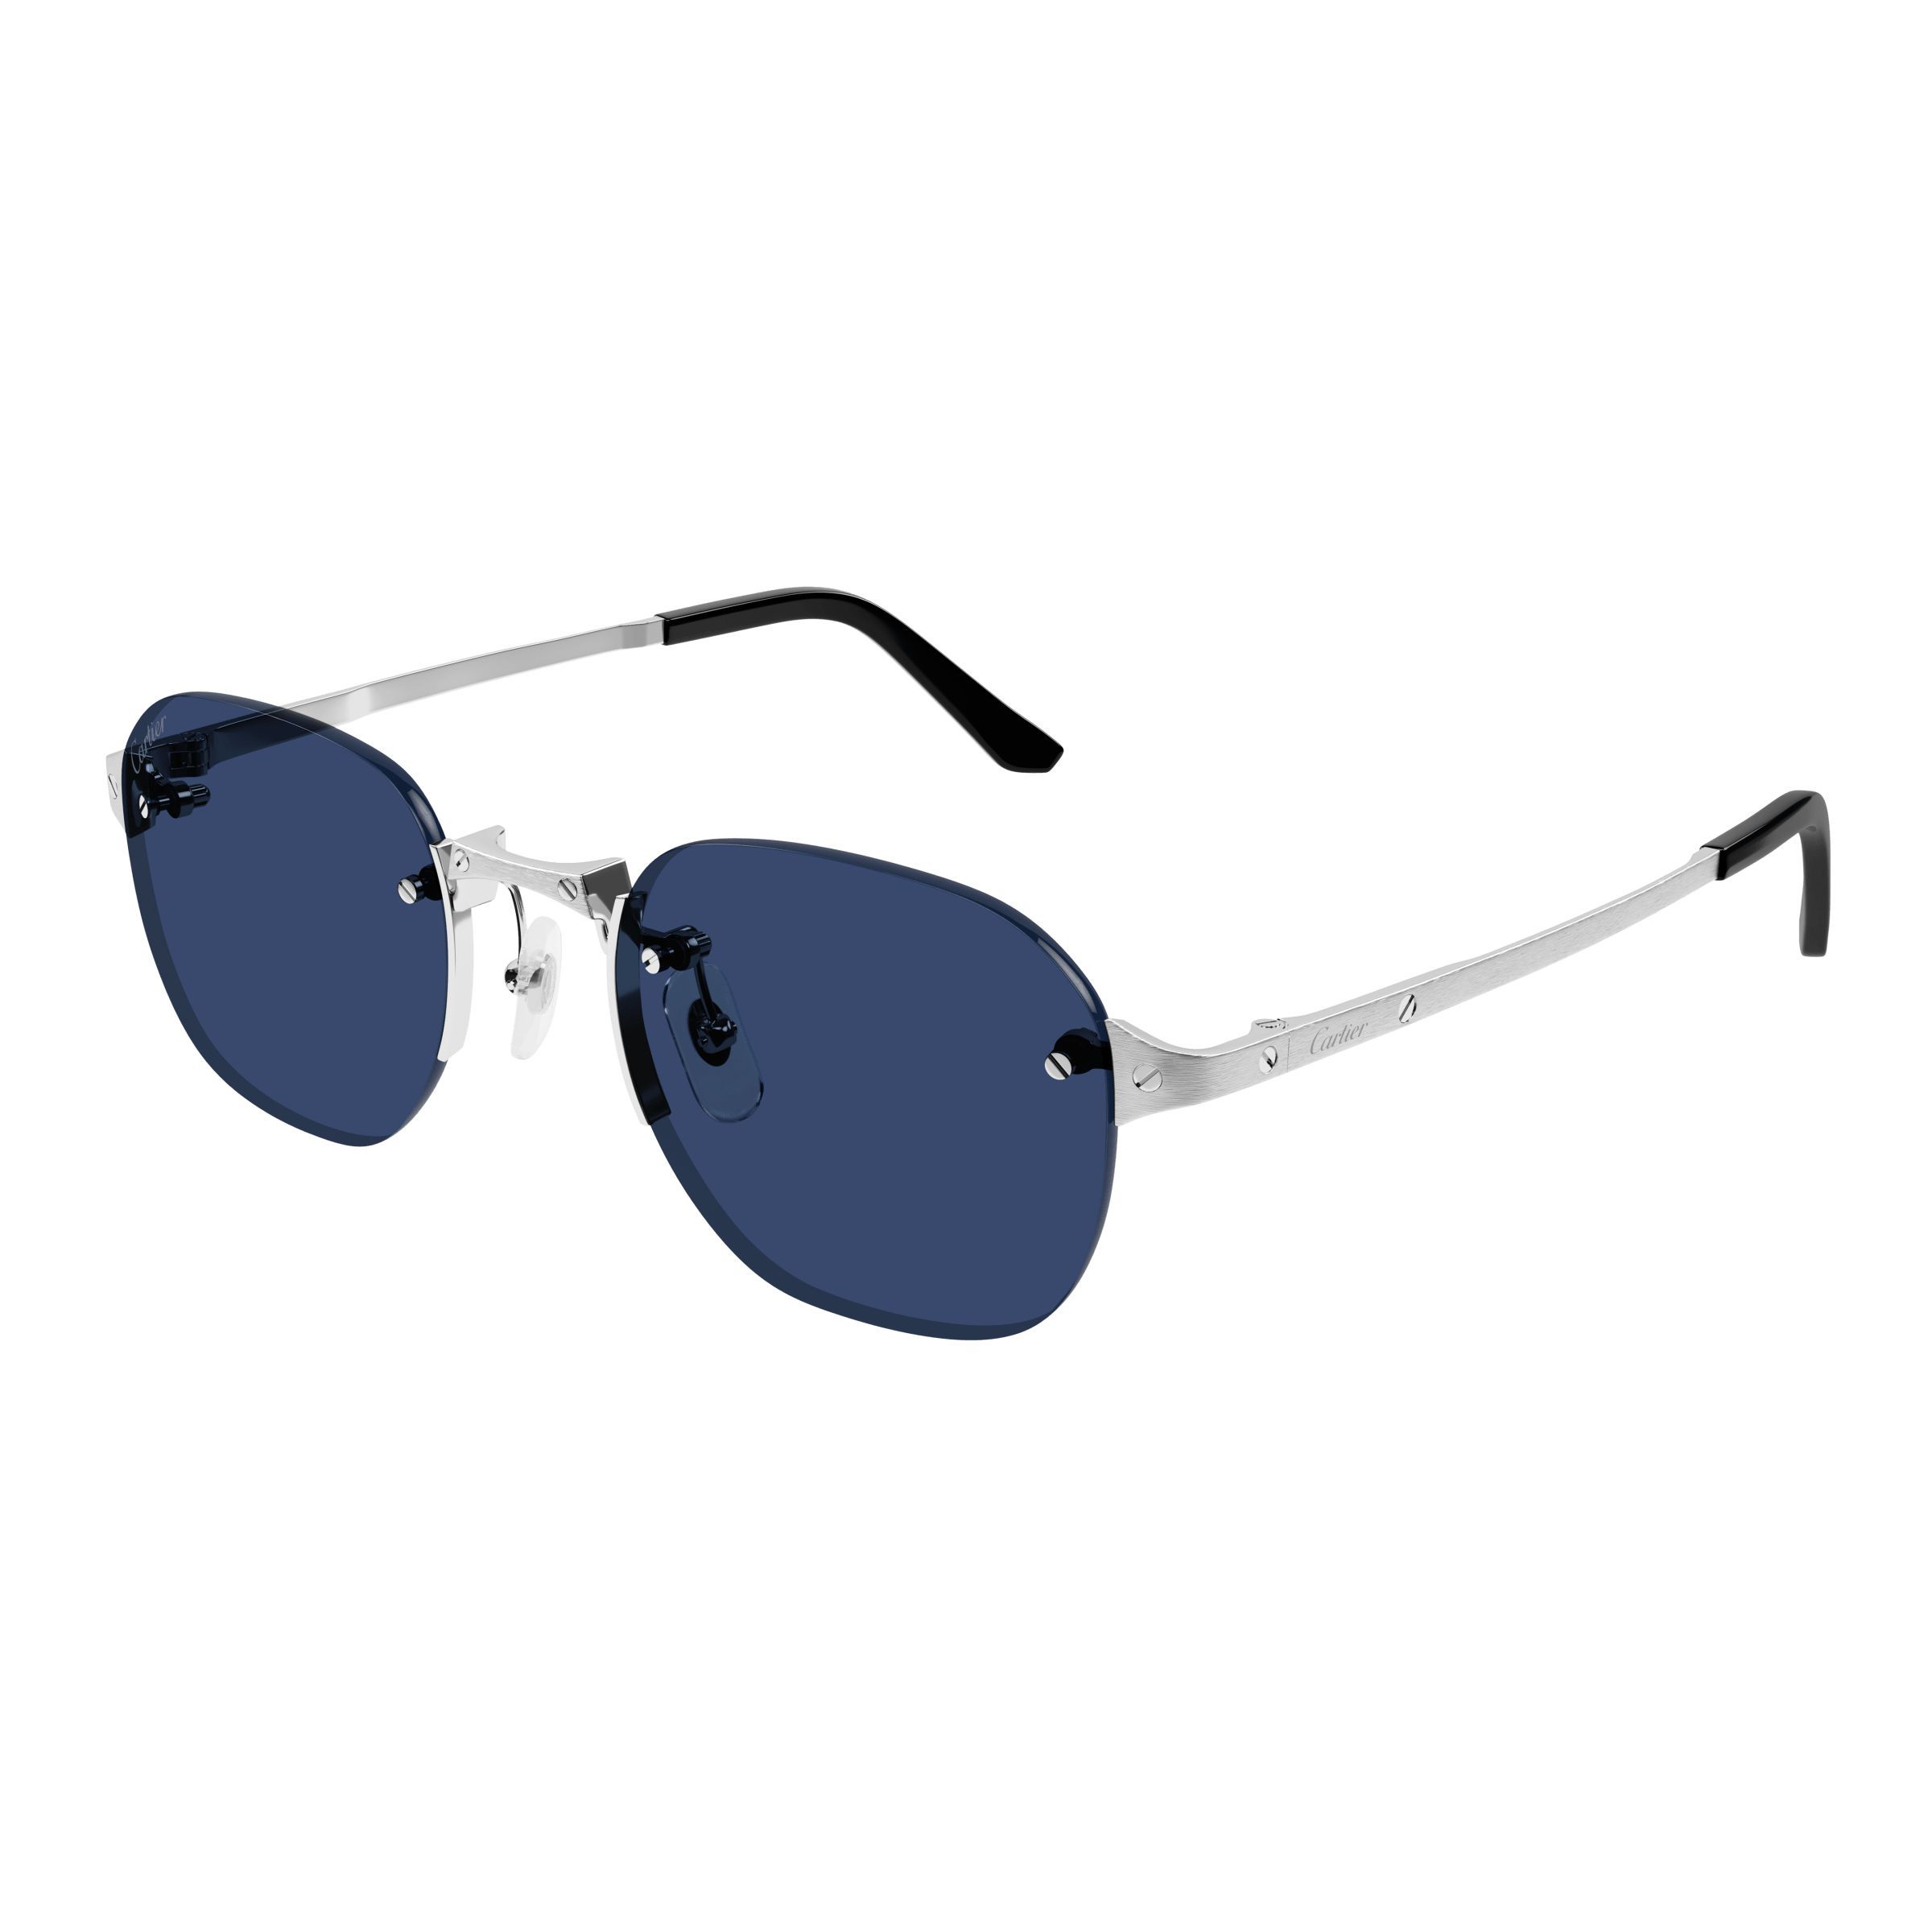 CT0459S Square Sunglasses 007 - size 53